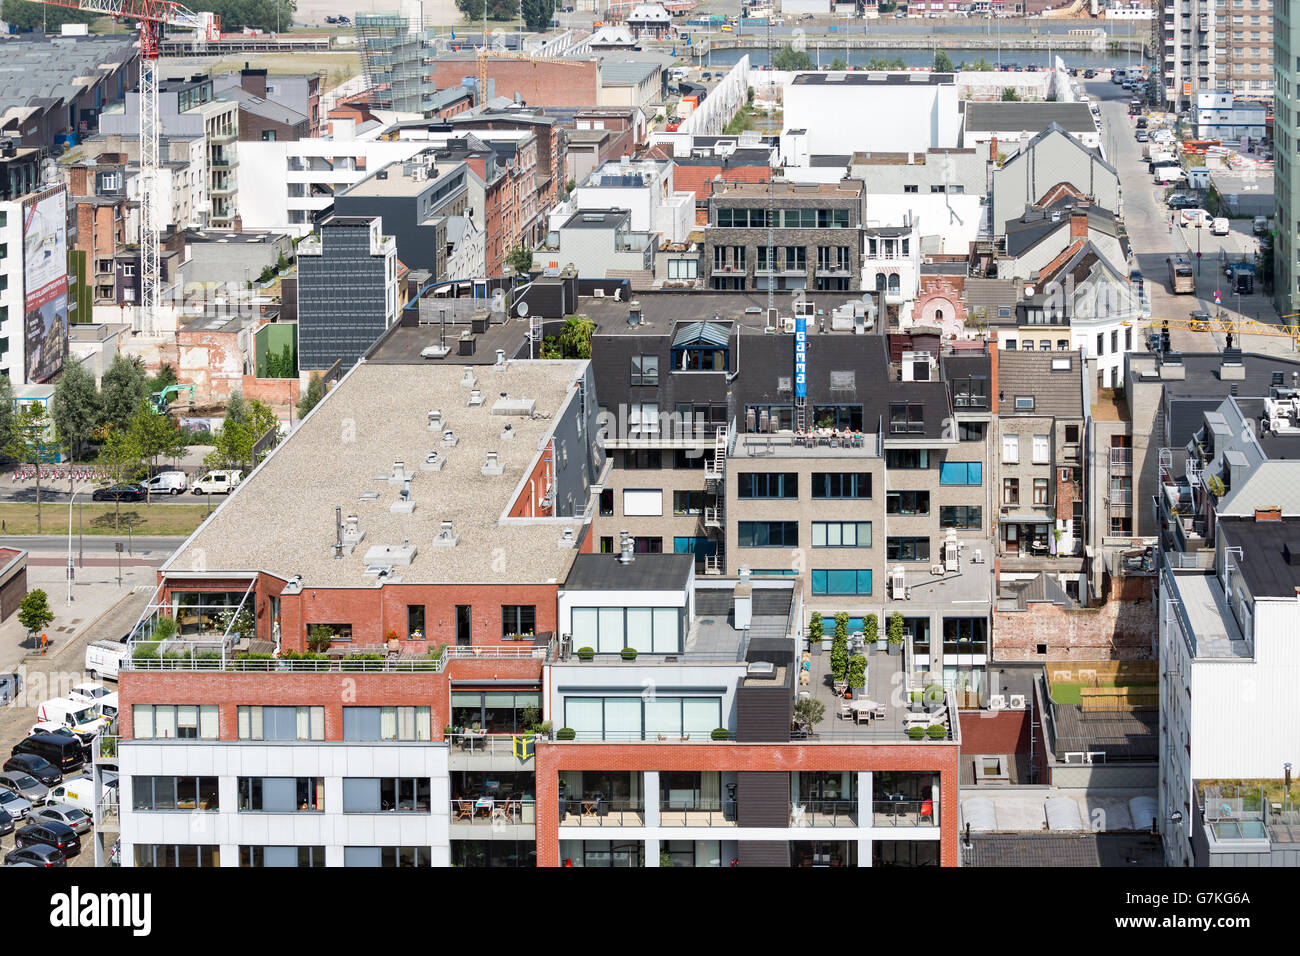 Vue aérienne de la zone portuaire d'Anvers musée de MAS toit-terrasse dans le port d'Anvers, Belgique Banque D'Images